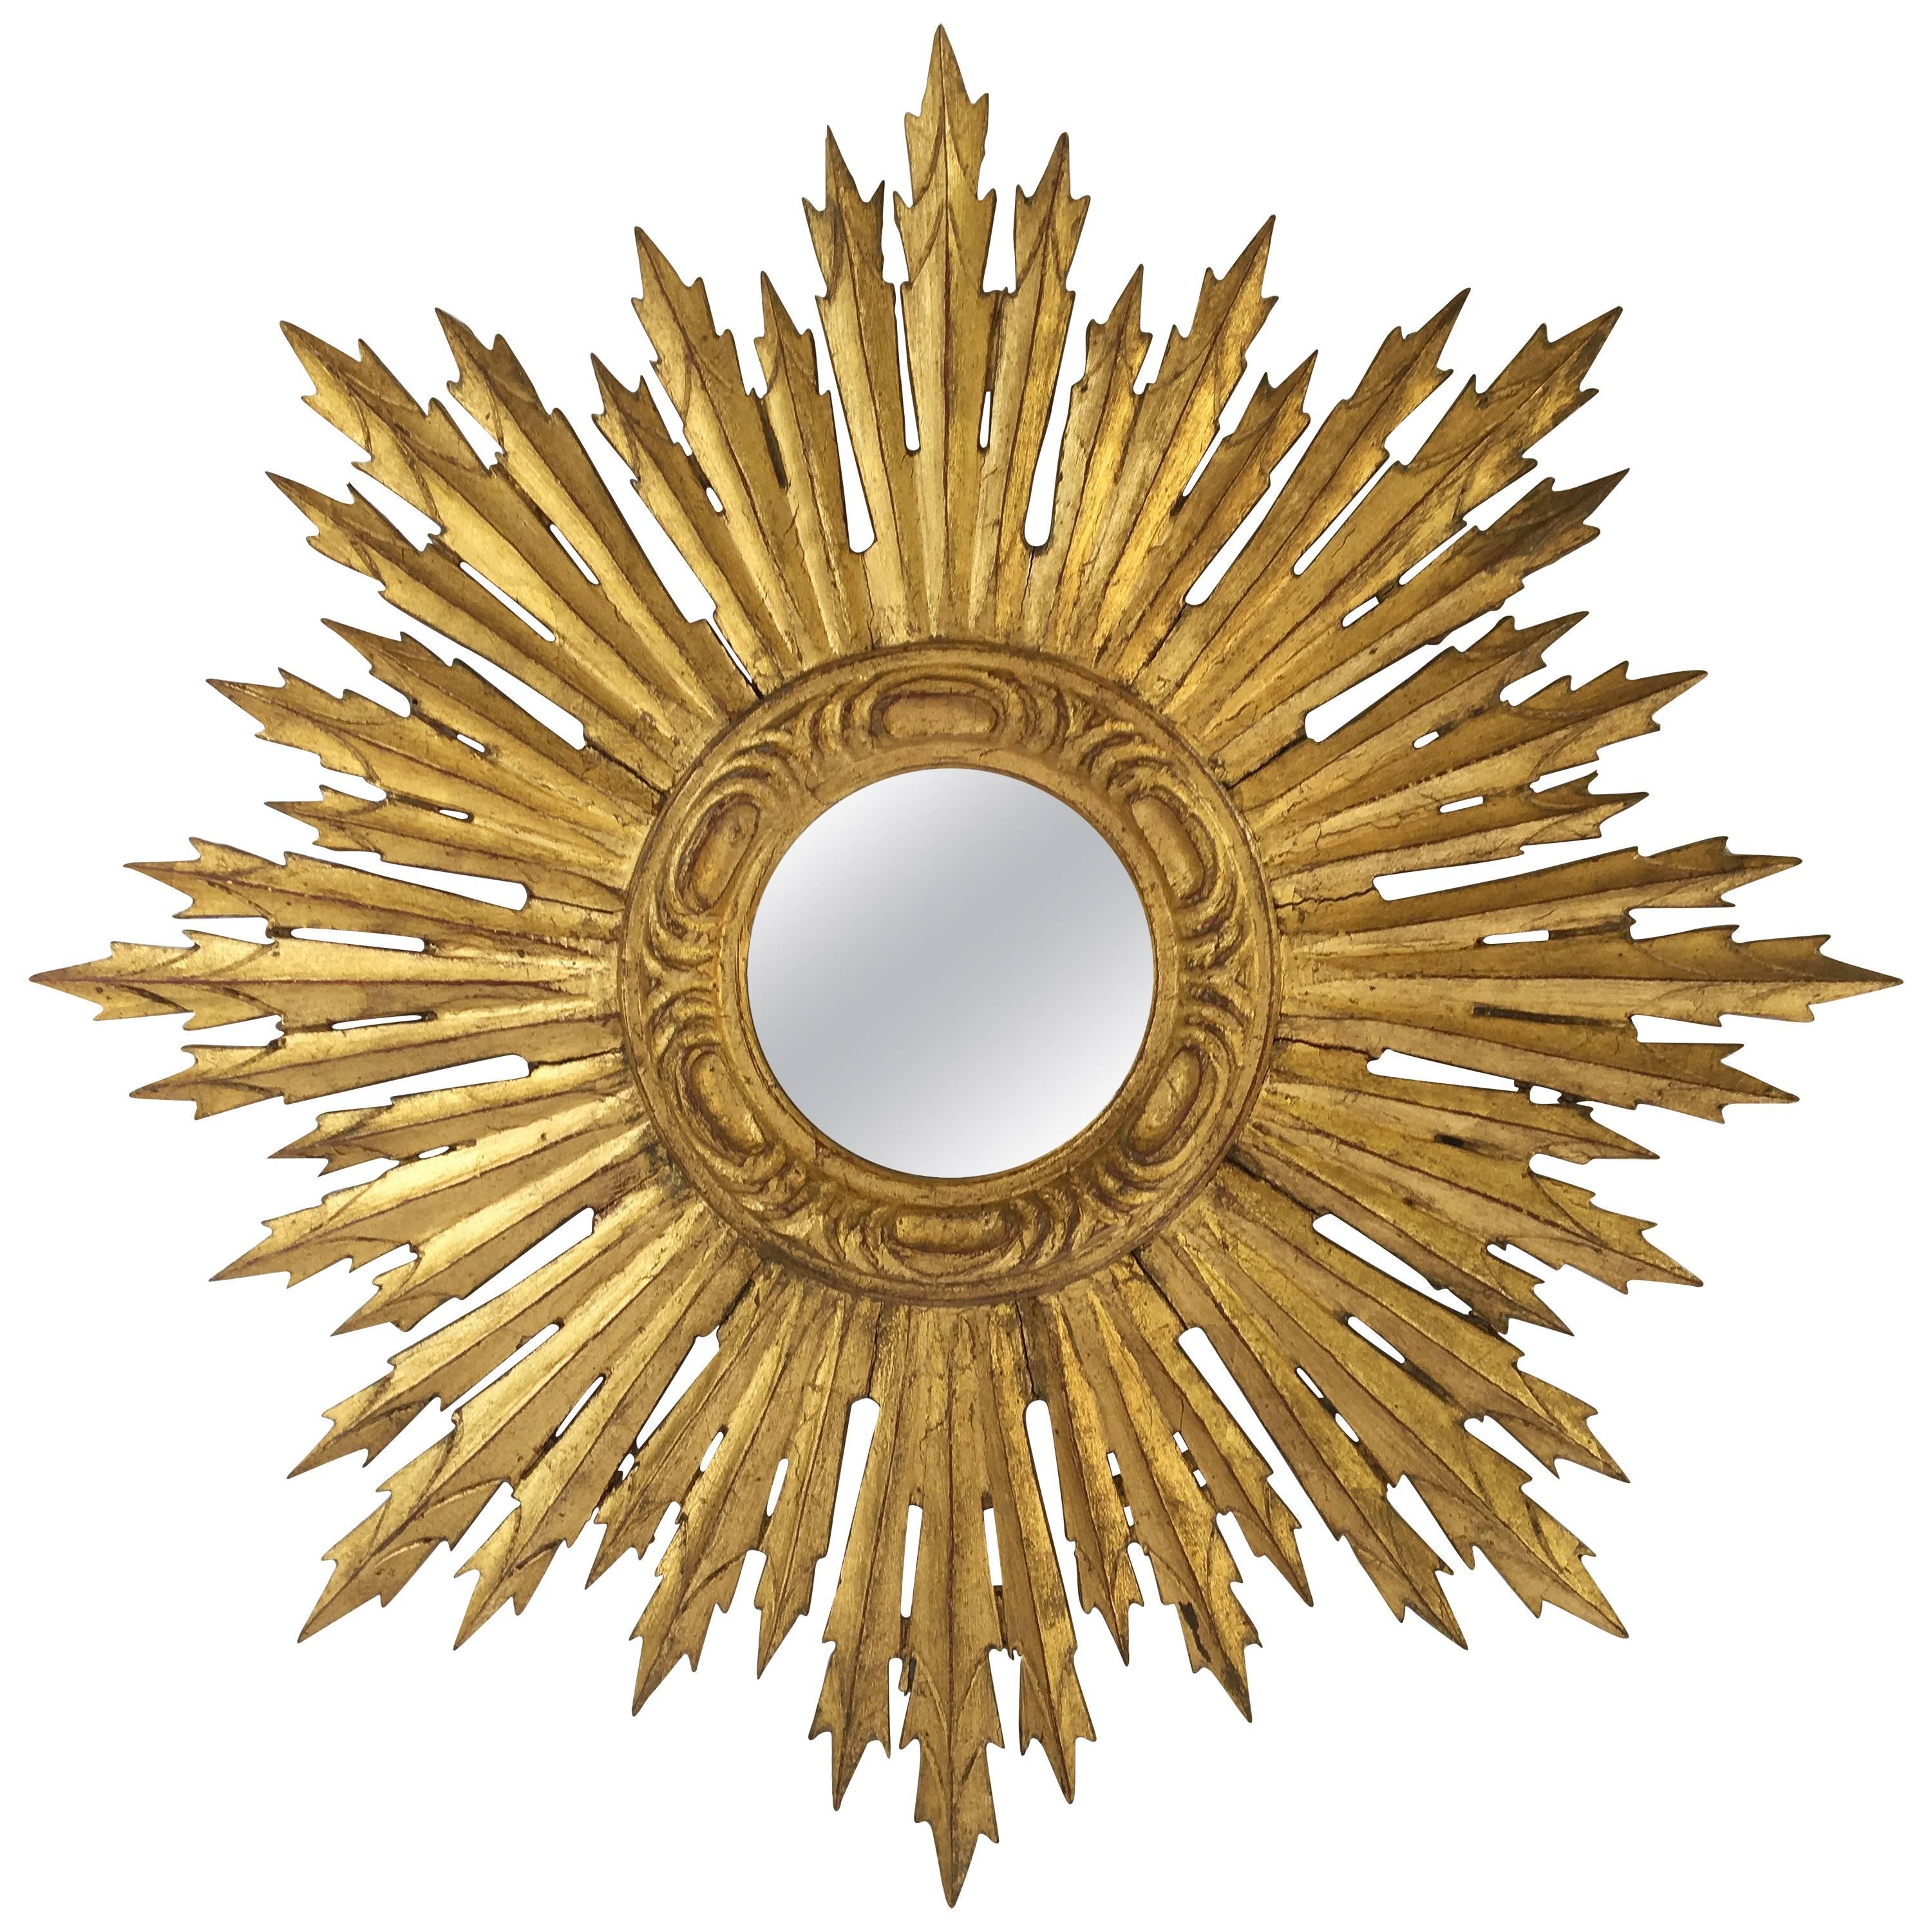 French Gilt Sunburst or Starburst Mirror (Diameter 24)